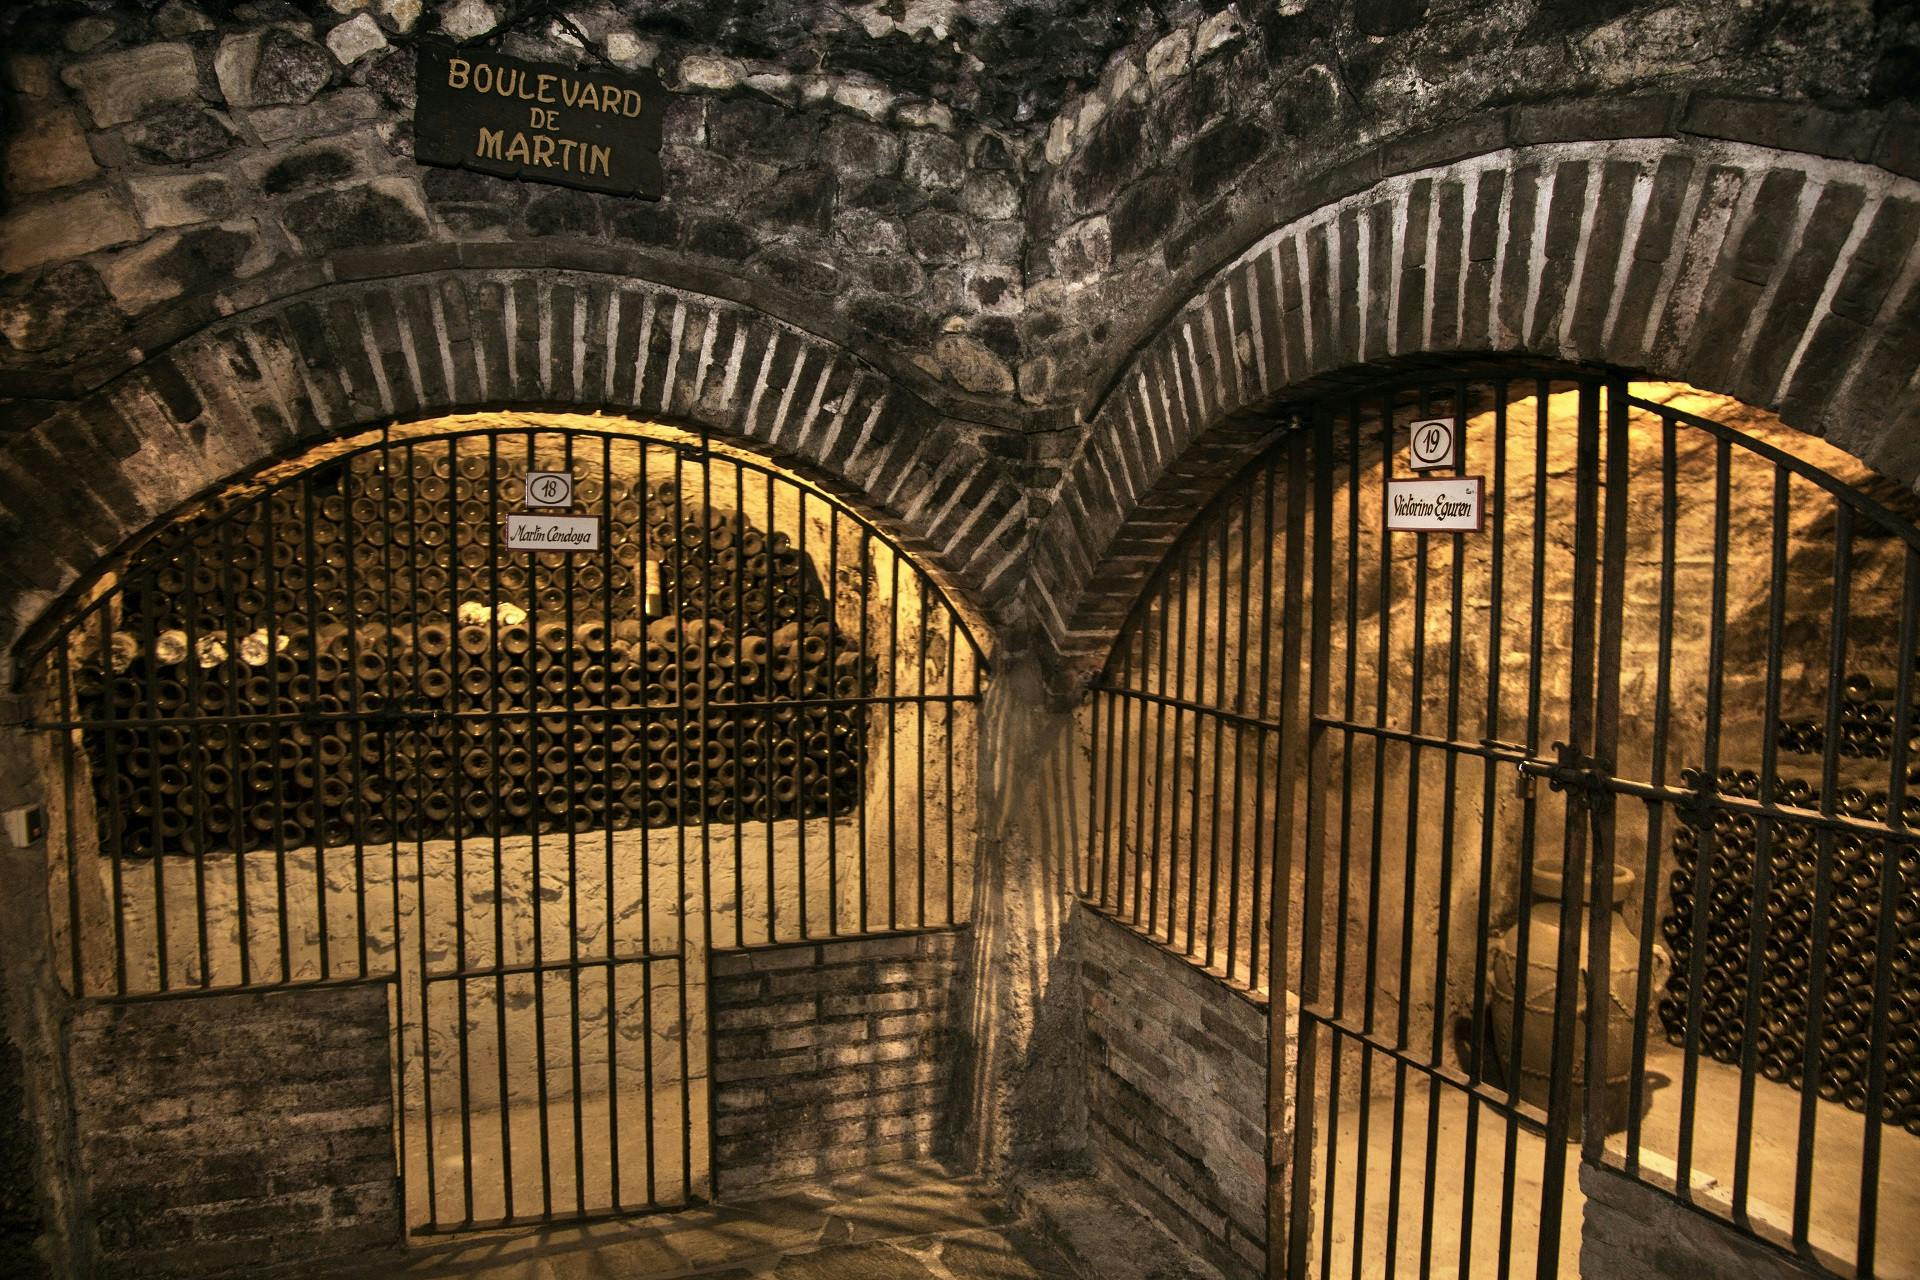 Two Wine Cellars visit with tasting in La Rioja and Wine cellar visit with tasting and lunch included (2).JPG